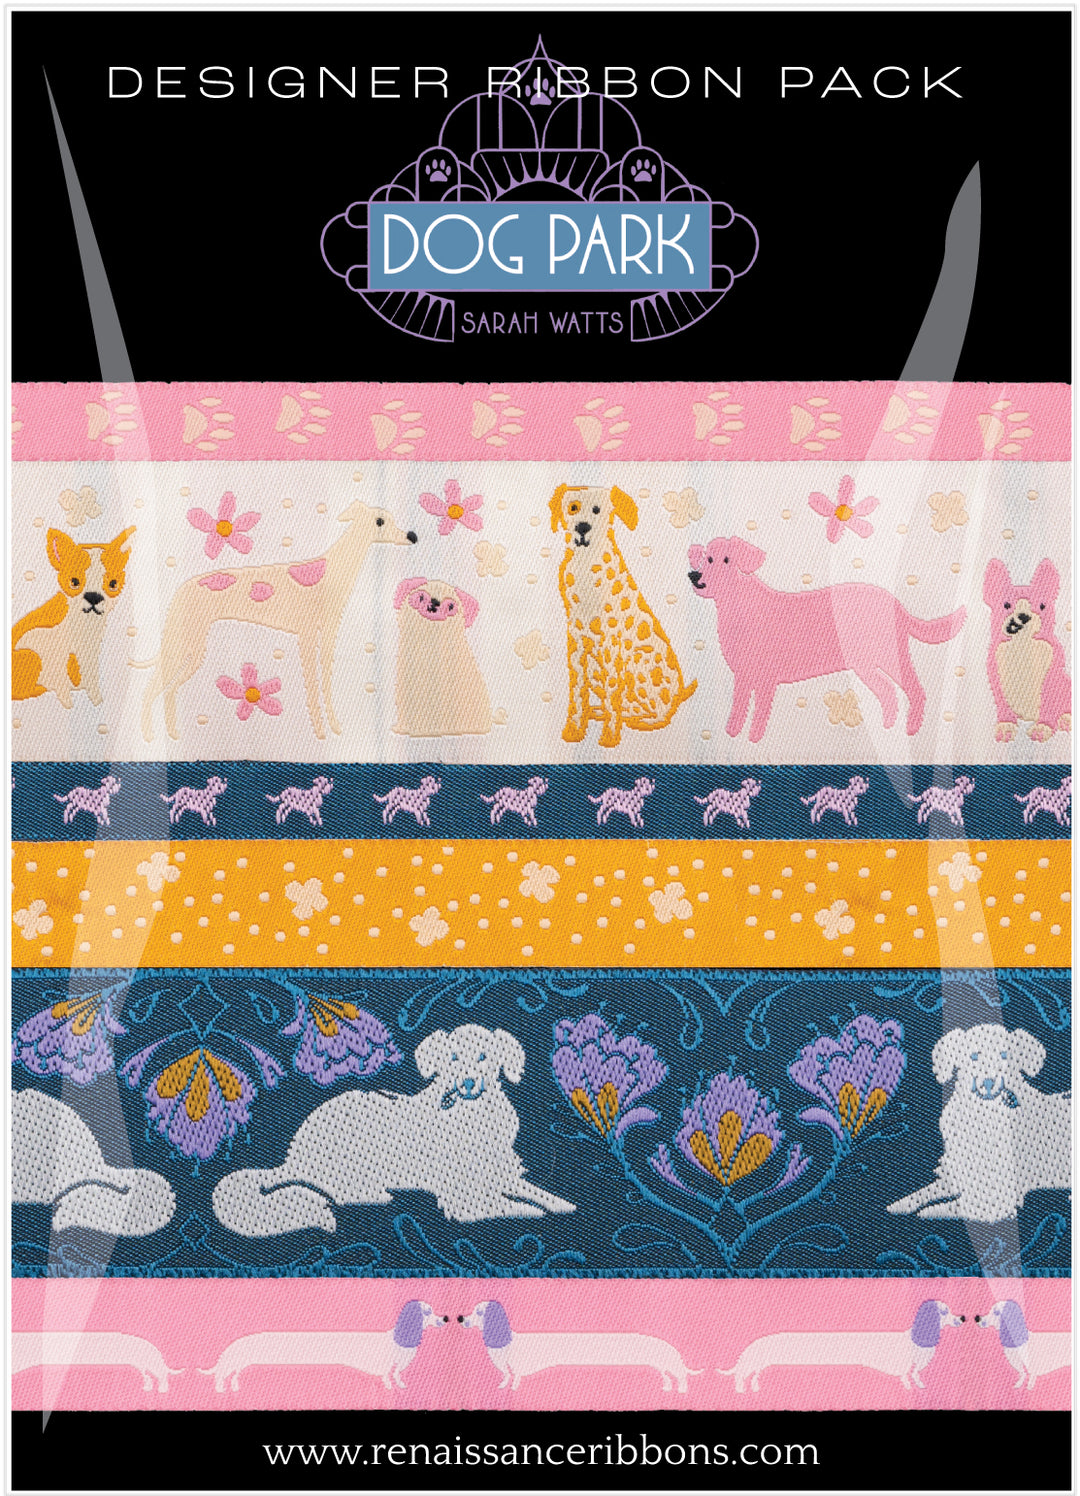 Sarah Watts - Dog Park - Designer Pack